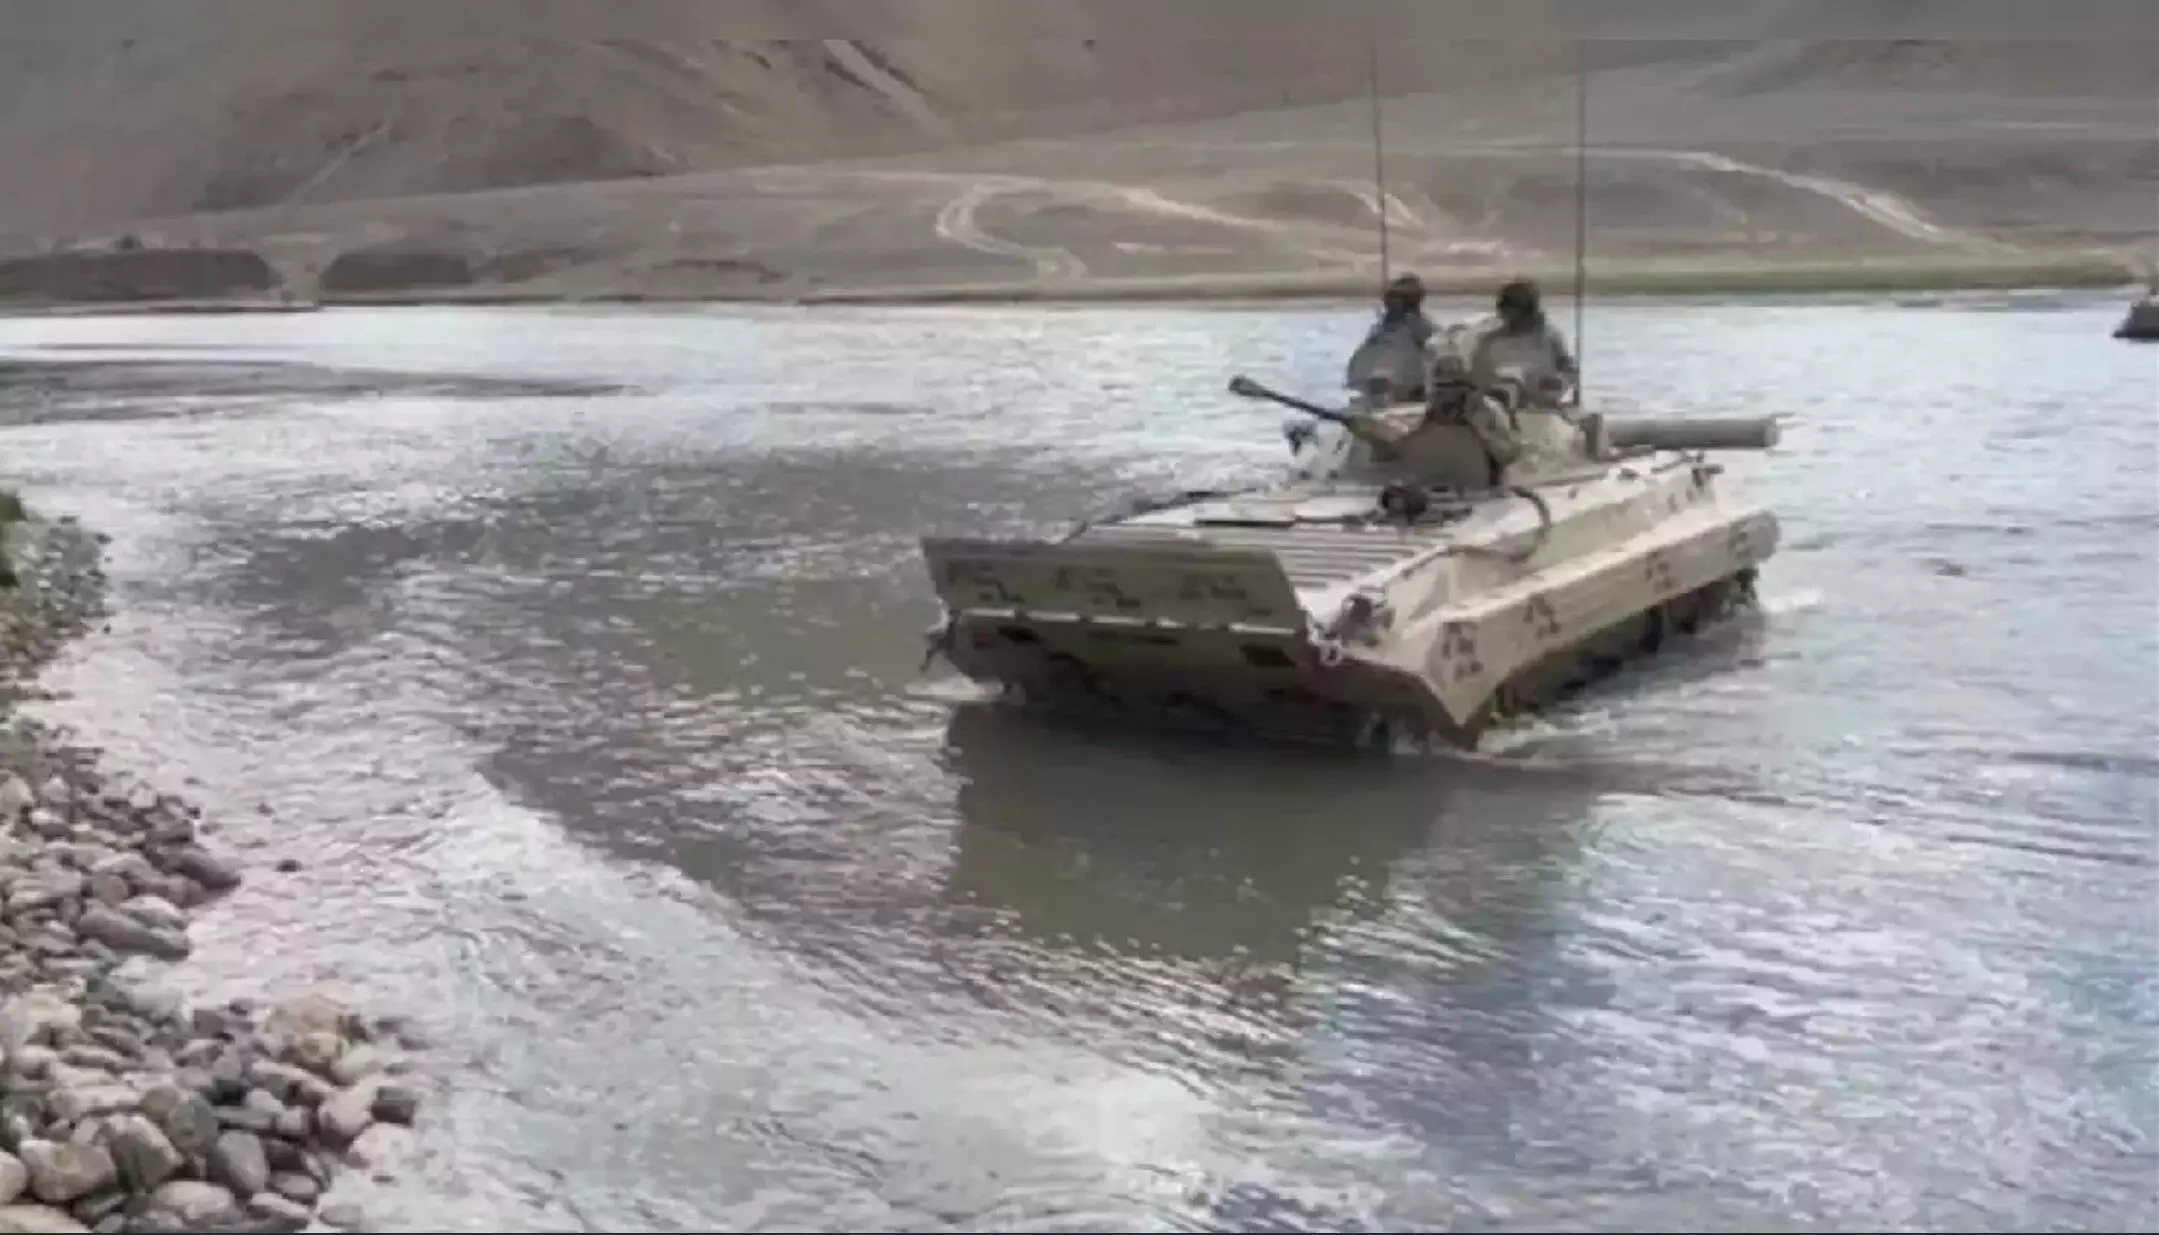 Indian Army Accident : लद्दाख में सैन्य अभ्यास के दौरान बड़ा हादसा! उफनती नदी में बह गया टैंक, सेना के 7 जवान शहीद